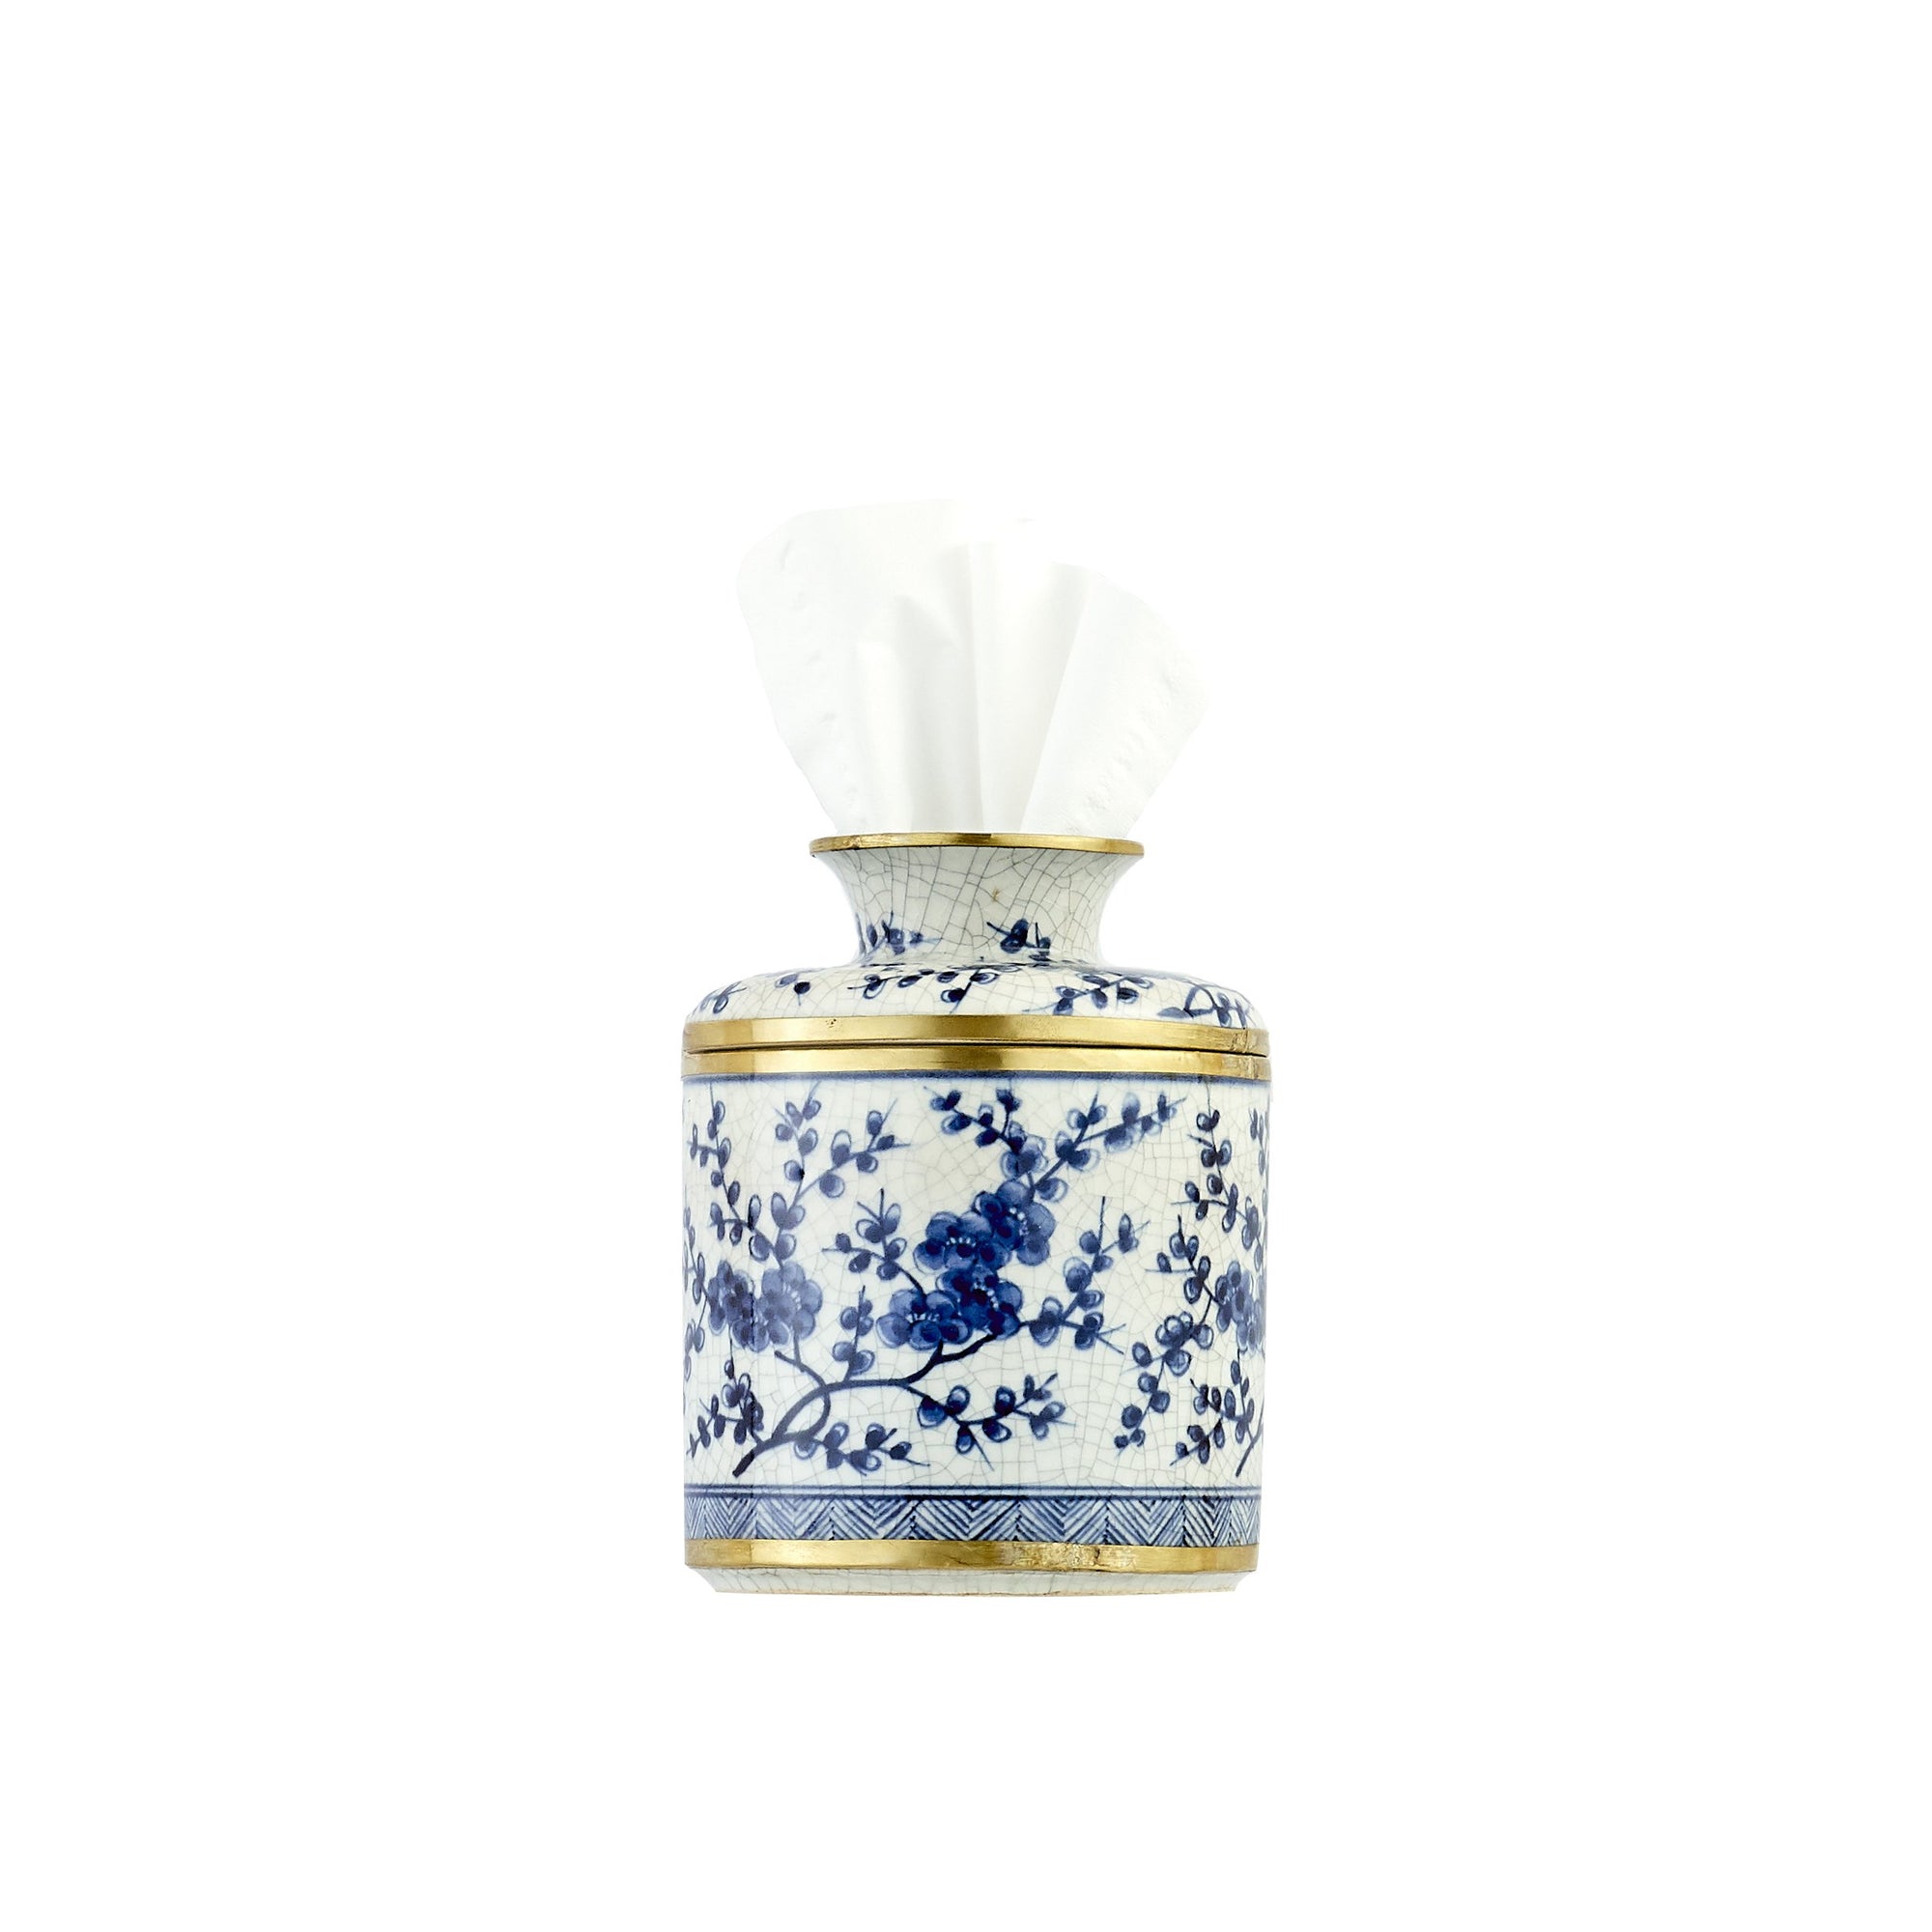 Blue & White Porcelain Tissue Holder